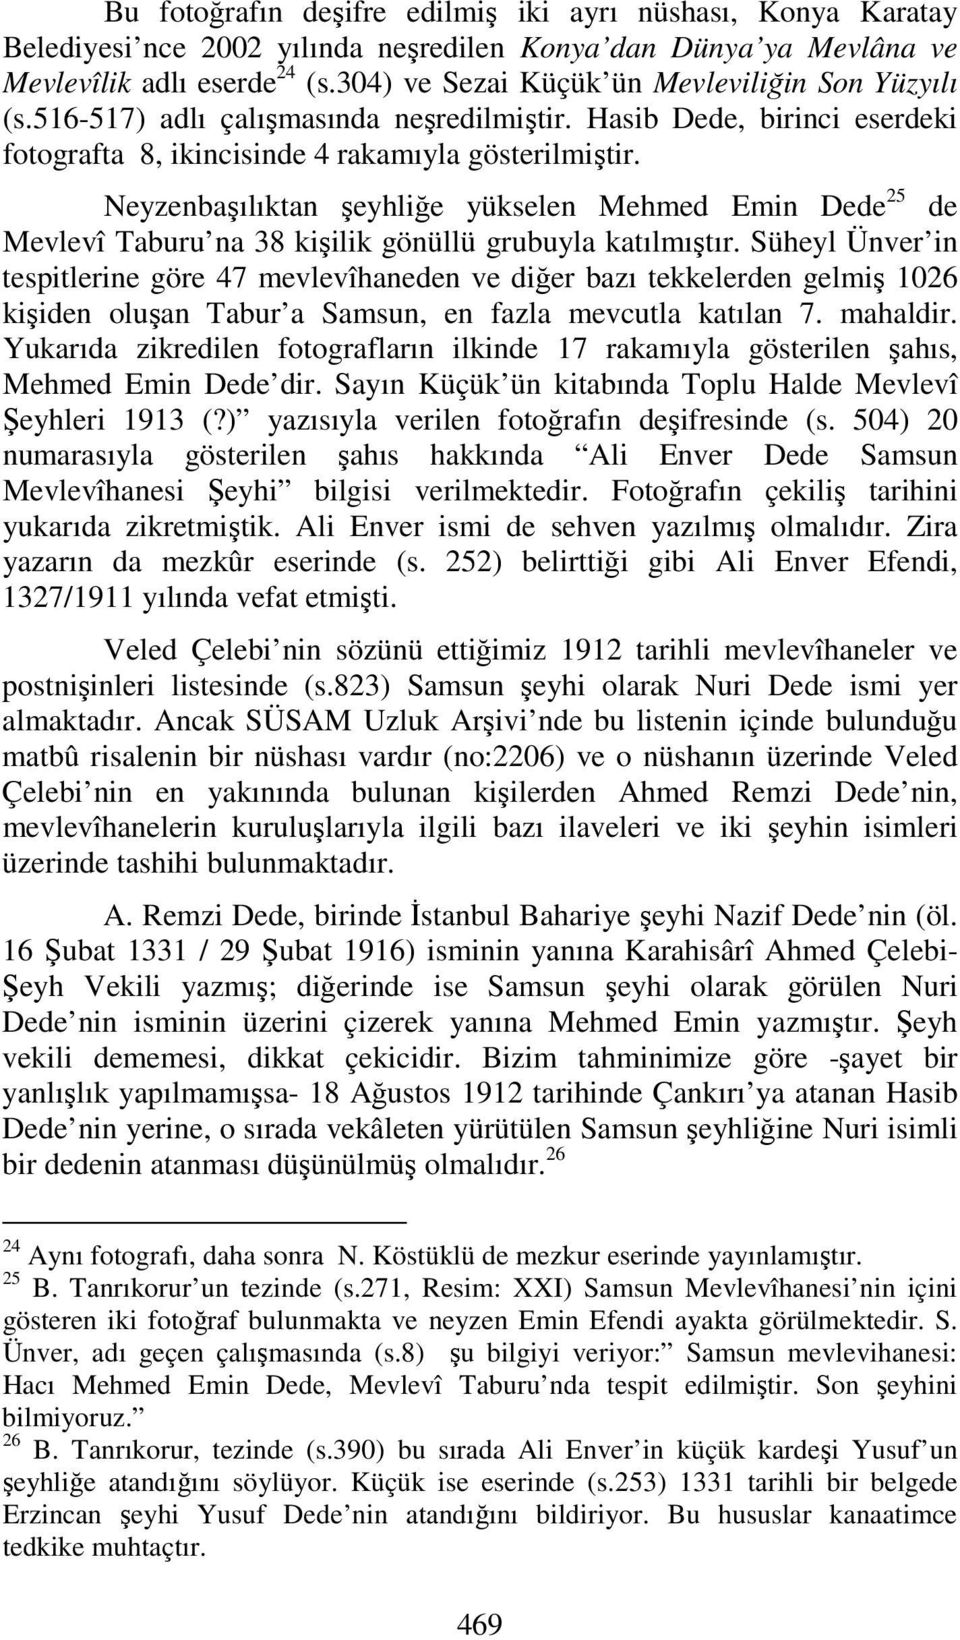 Neyzenbaşılıktan şeyhliğe yükselen Mehmed Emin Dede 25 de Mevlevî Taburu na 38 kişilik gönüllü grubuyla katılmıştır.